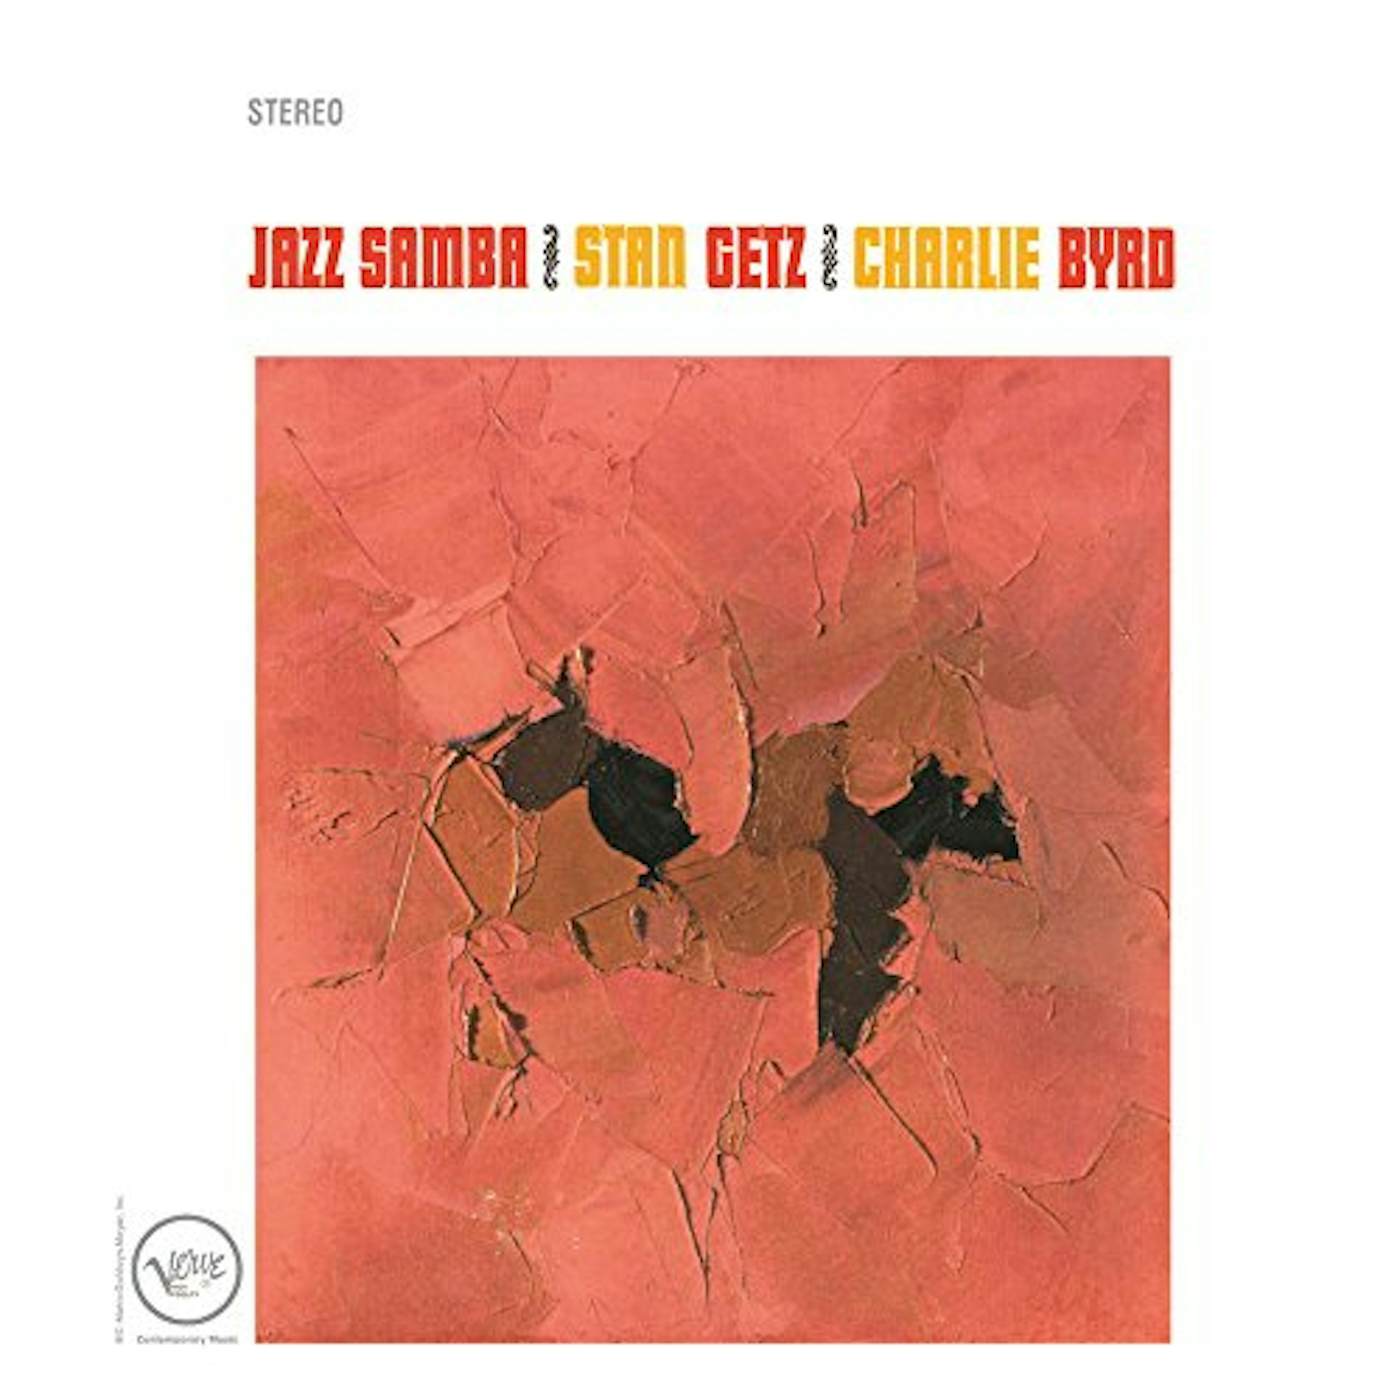 Stan Getz & Charlie Byrd JAZZ SAMBA / BIG BAND BOSSA NOVA + 1 BONUS TRACK CD